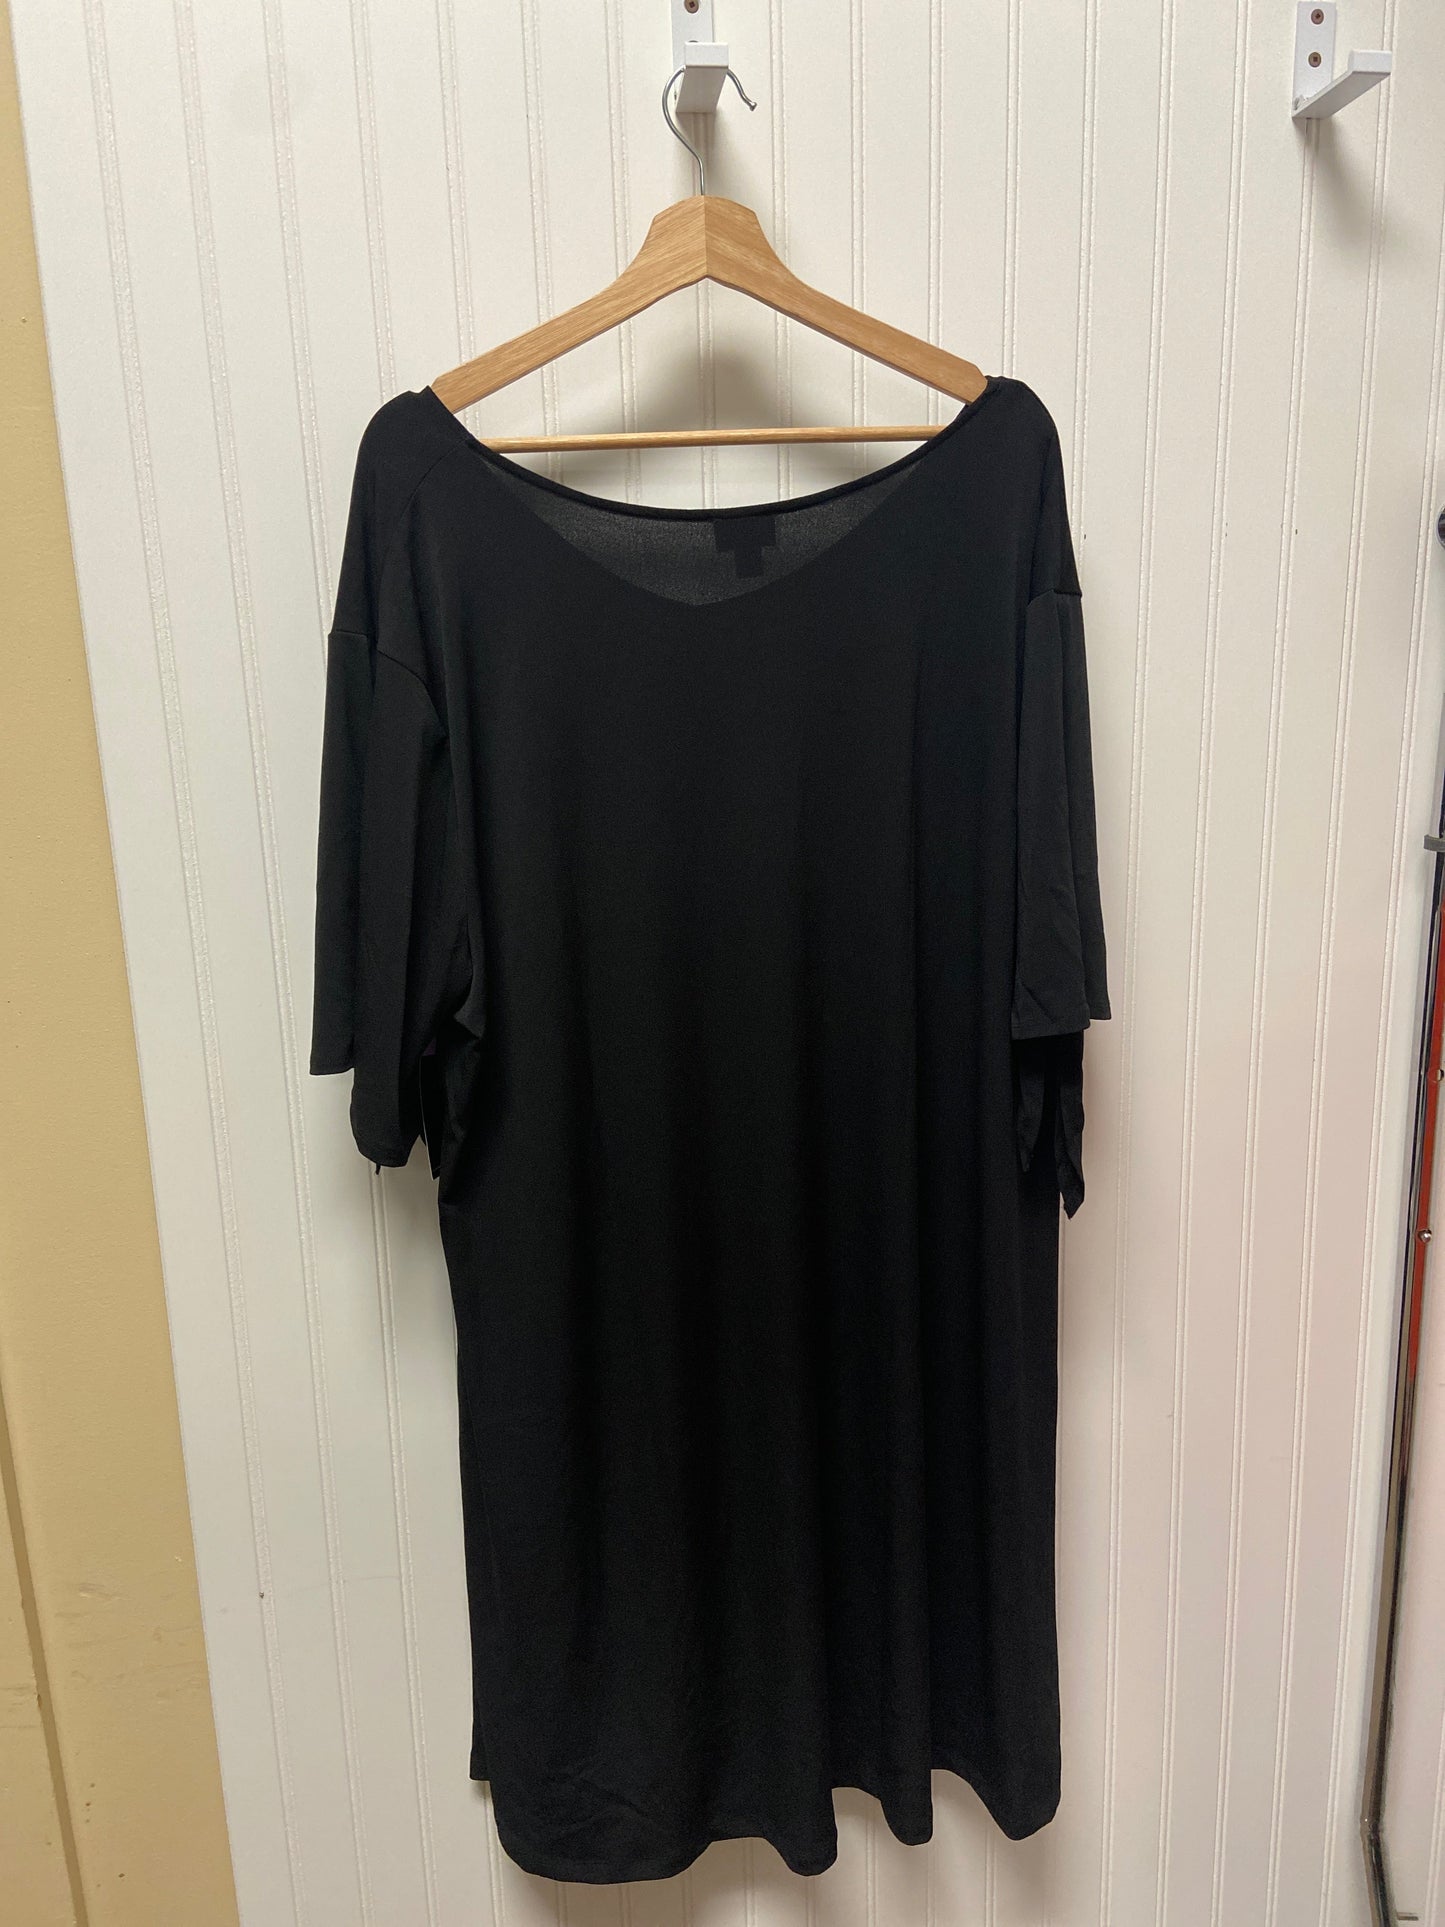 Black Dress Casual Short Worthington, Size 2x